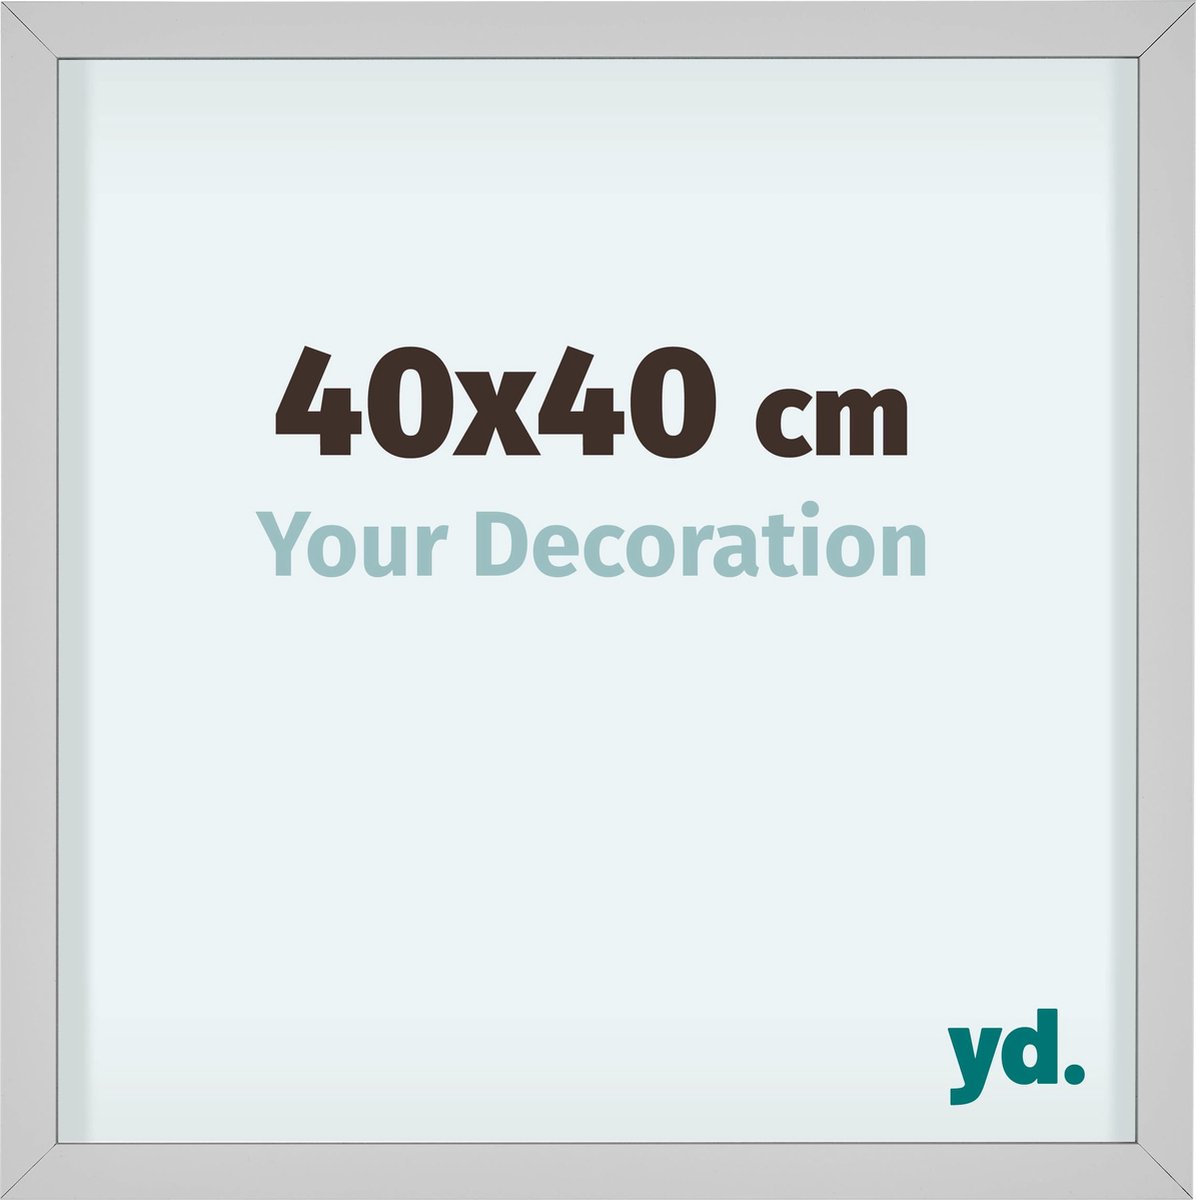 Your Decoration Virginia Aluminium Fotolijst 40x40cm Wit